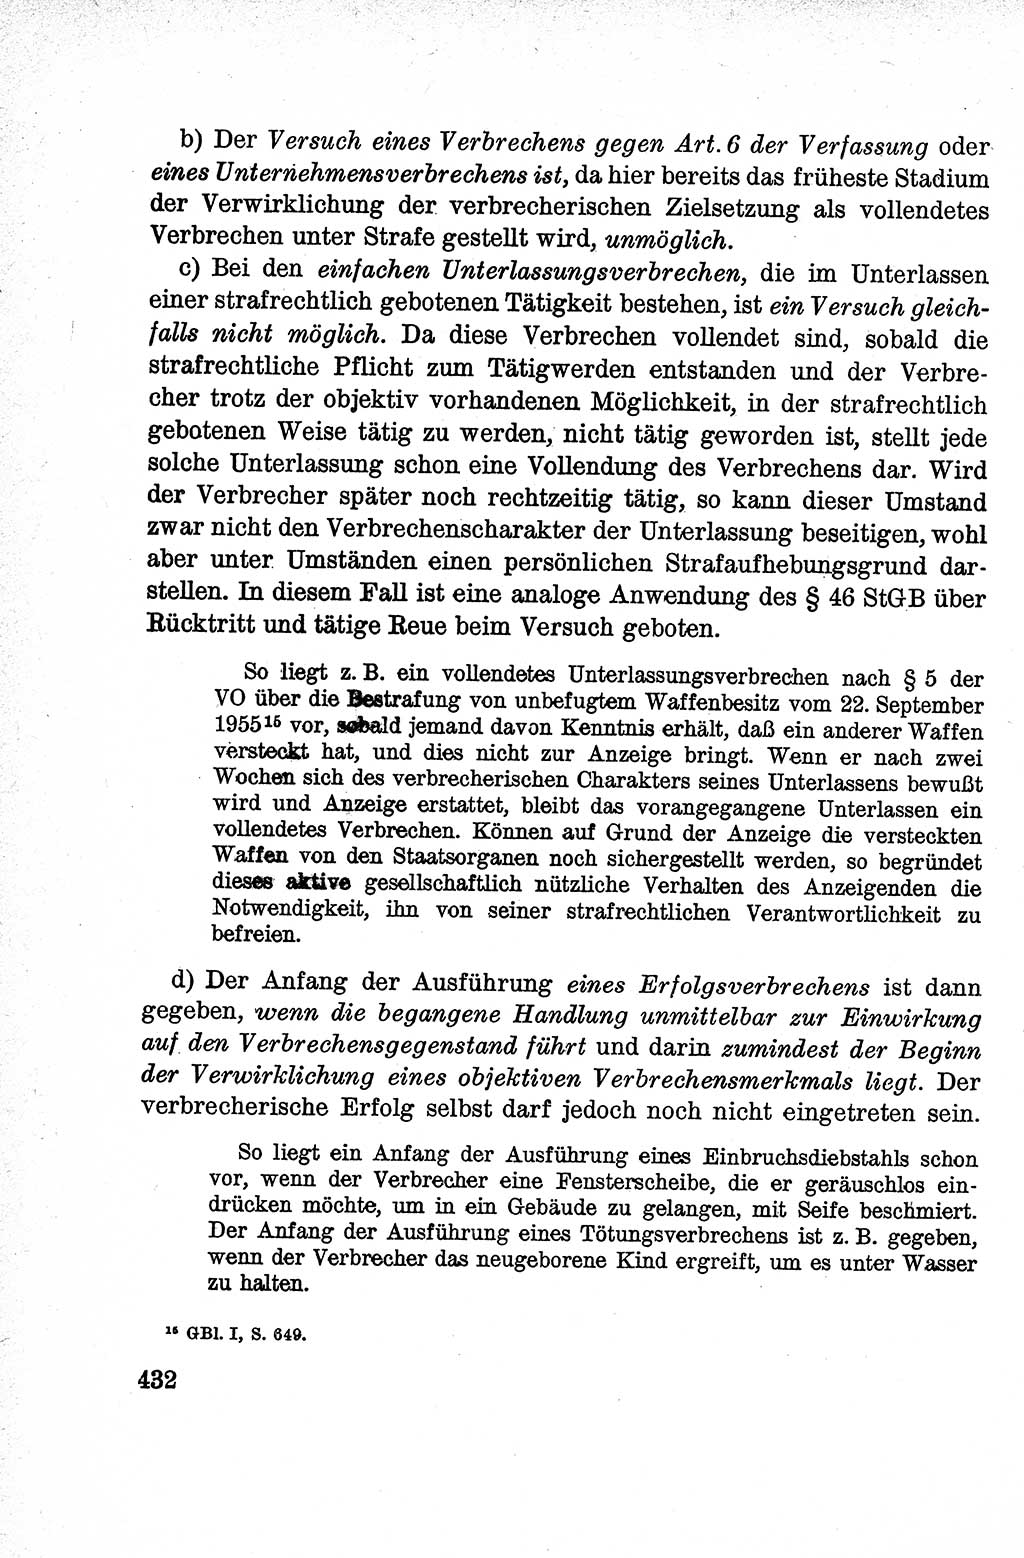 Lehrbuch des Strafrechts der Deutschen Demokratischen Republik (DDR), Allgemeiner Teil 1959, Seite 432 (Lb. Strafr. DDR AT 1959, S. 432)